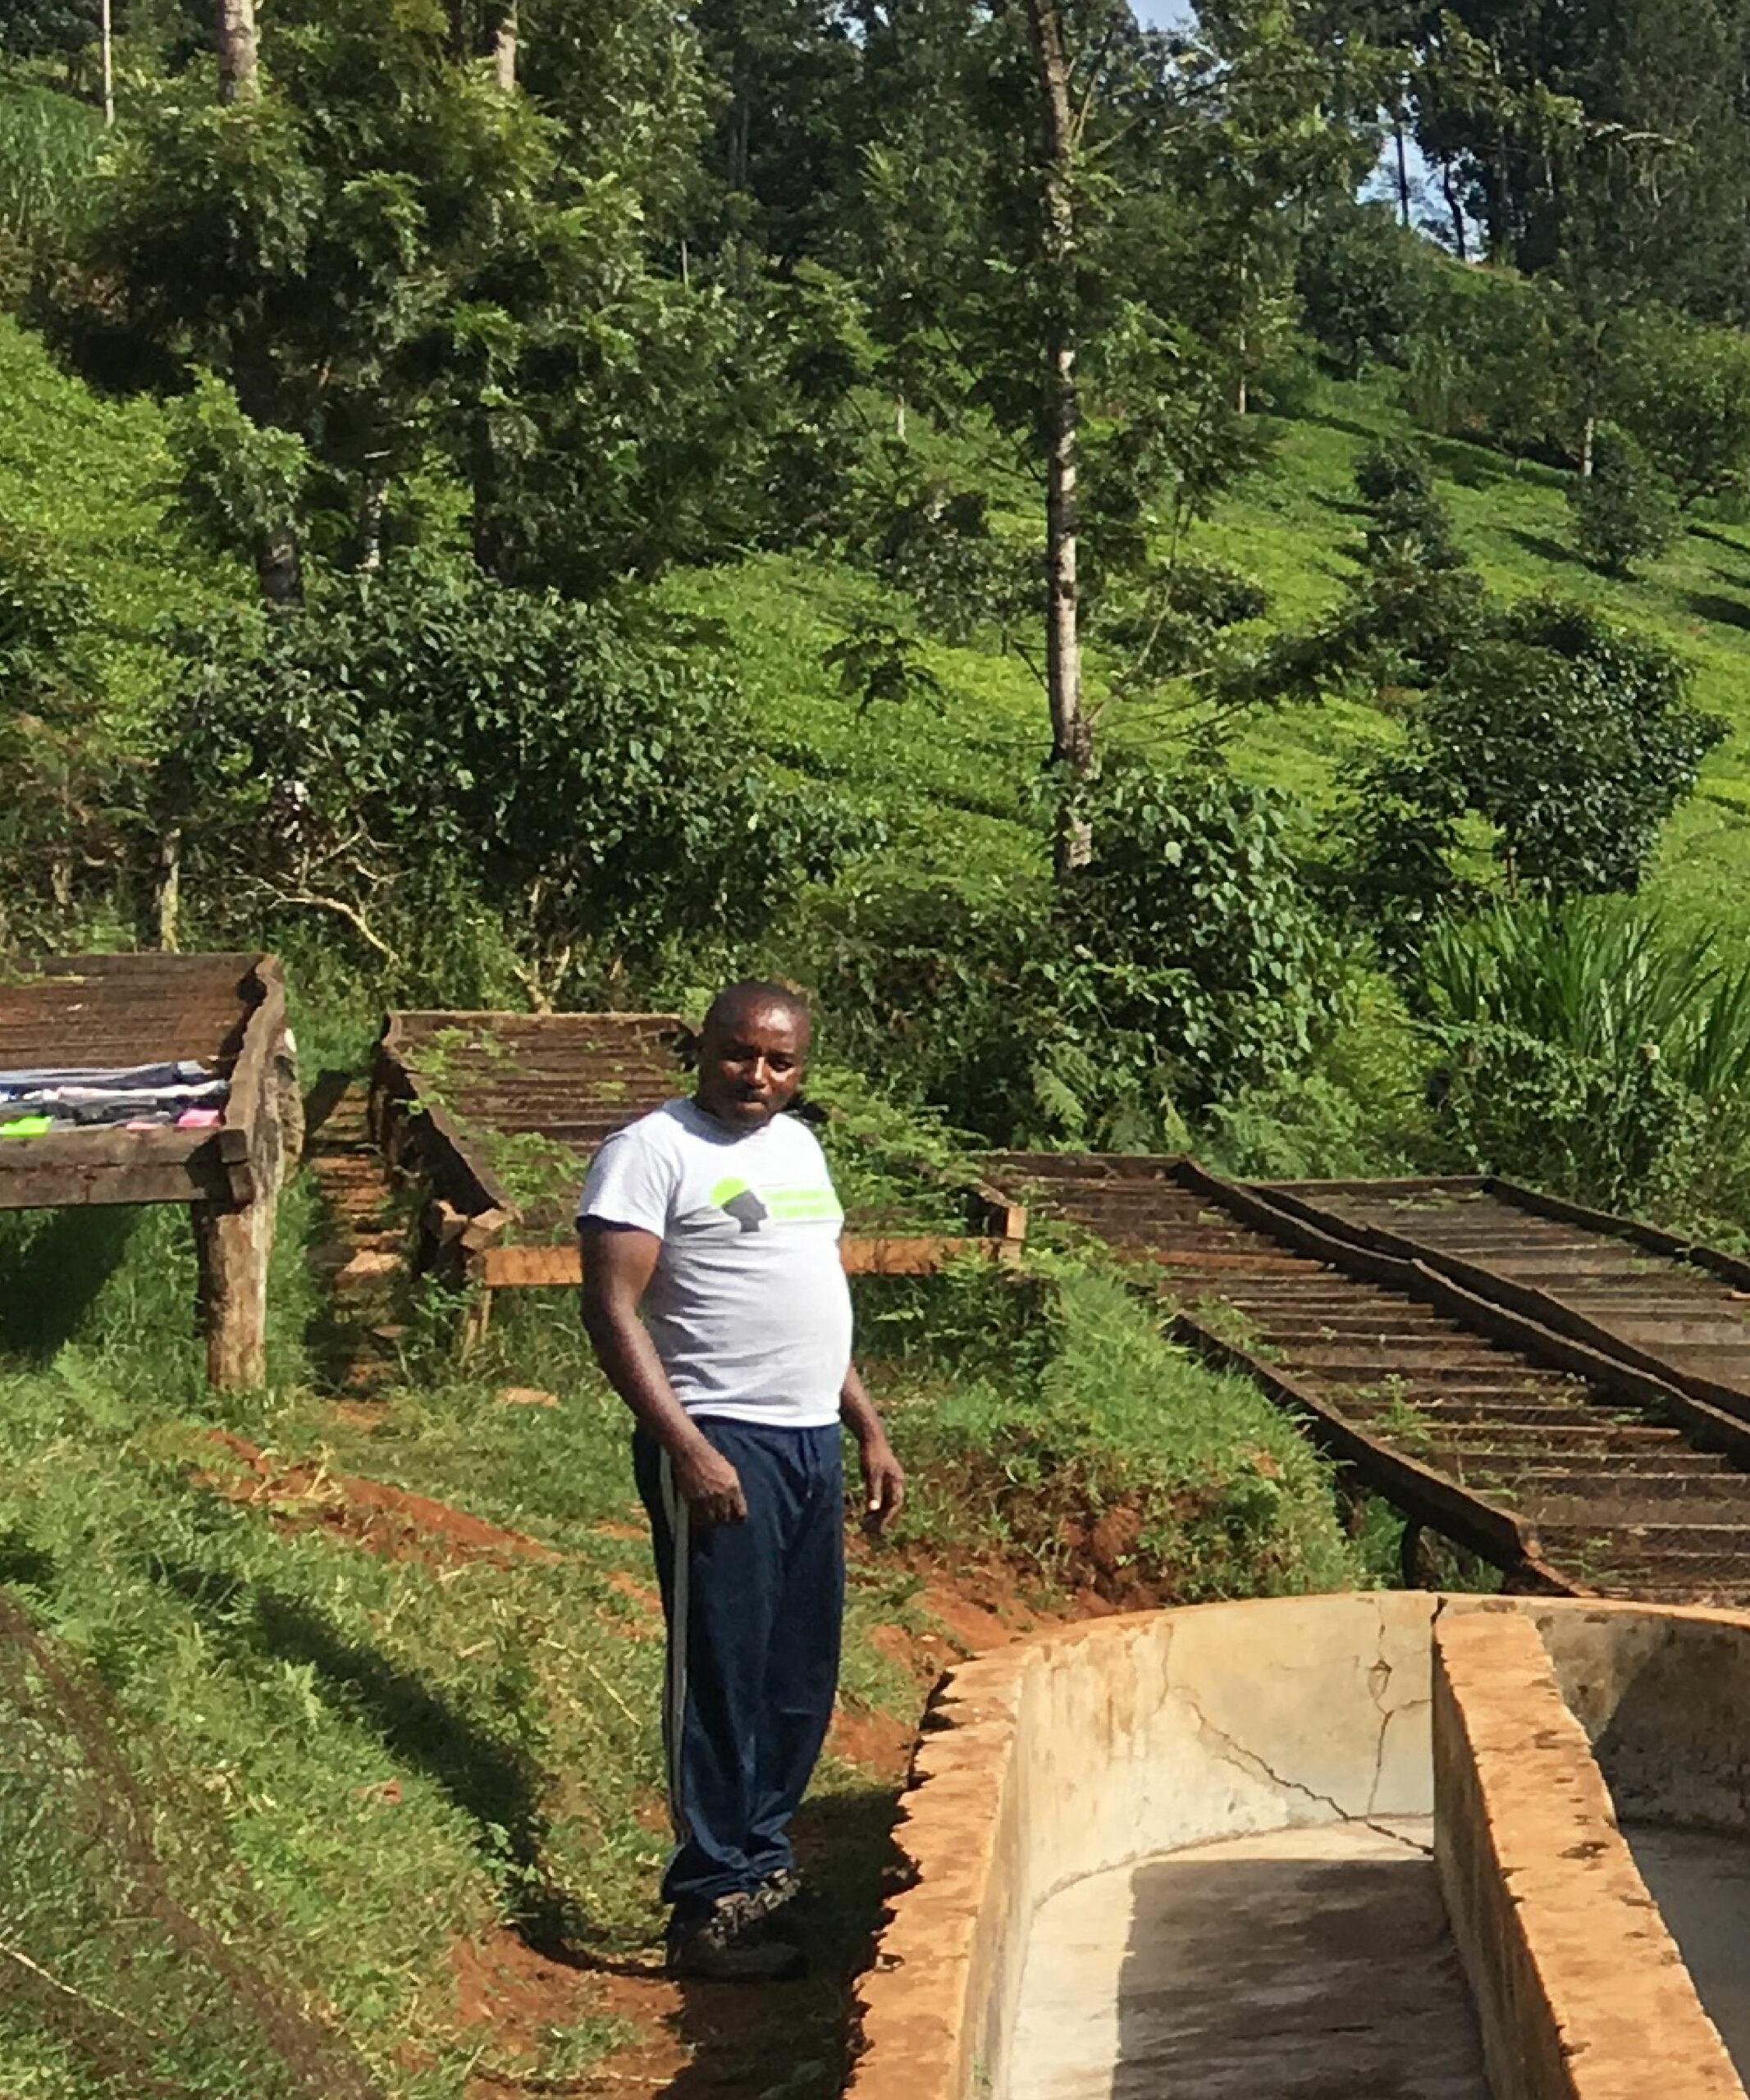 Productor de café verde Moses Kamura en su finca del origen cafetalero Kenia